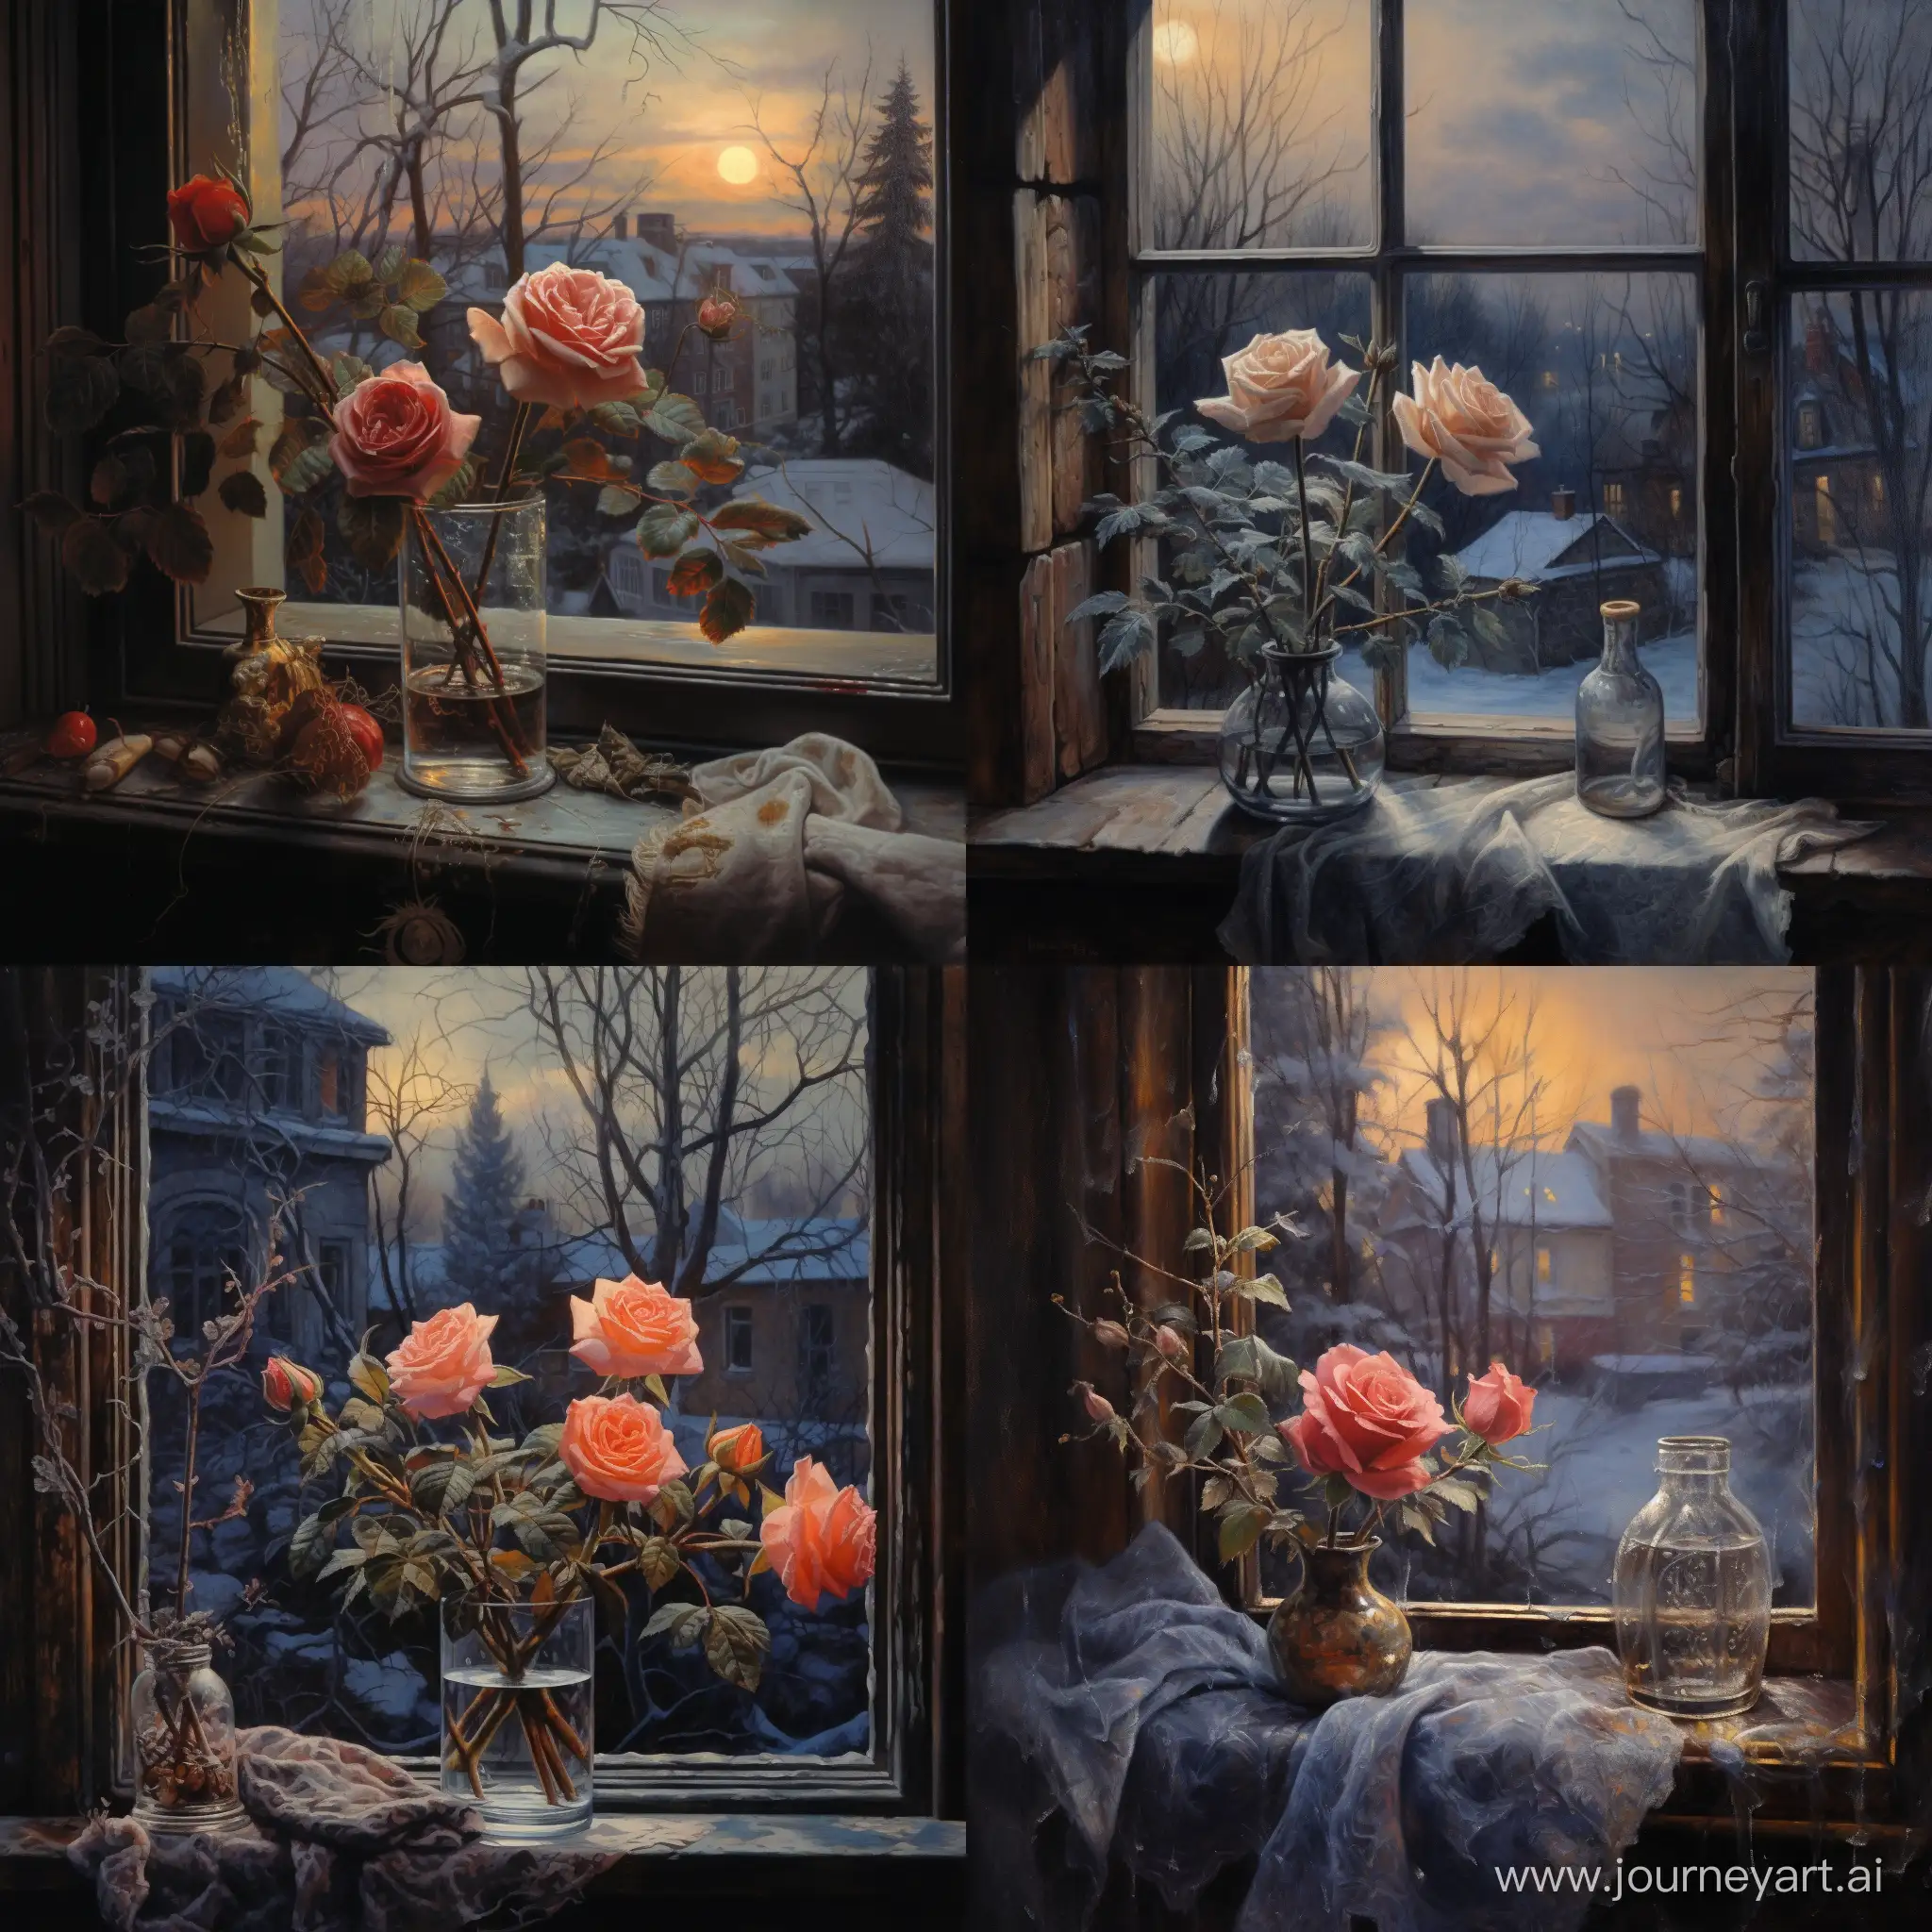 роза на подоконнике, в окне ночной зимний пейзаж